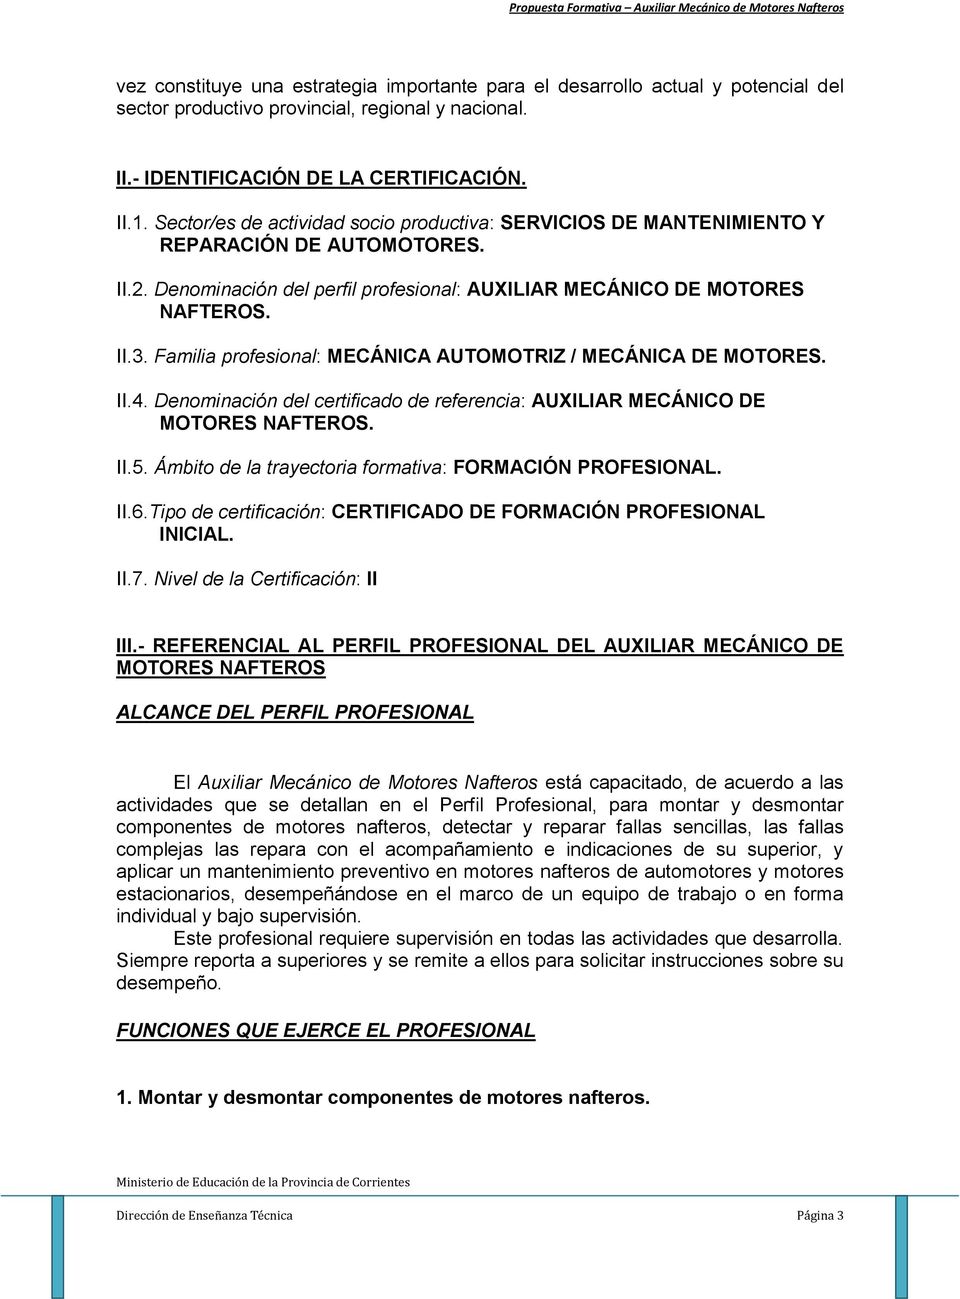 Familia profesional: MECÁNICA AUTOMOTRIZ / MECÁNICA DE MOTORES. II.4. Denominación del certificado de referencia: AUXILIAR MECÁNICO DE MOTORES NAFTEROS. II.5.